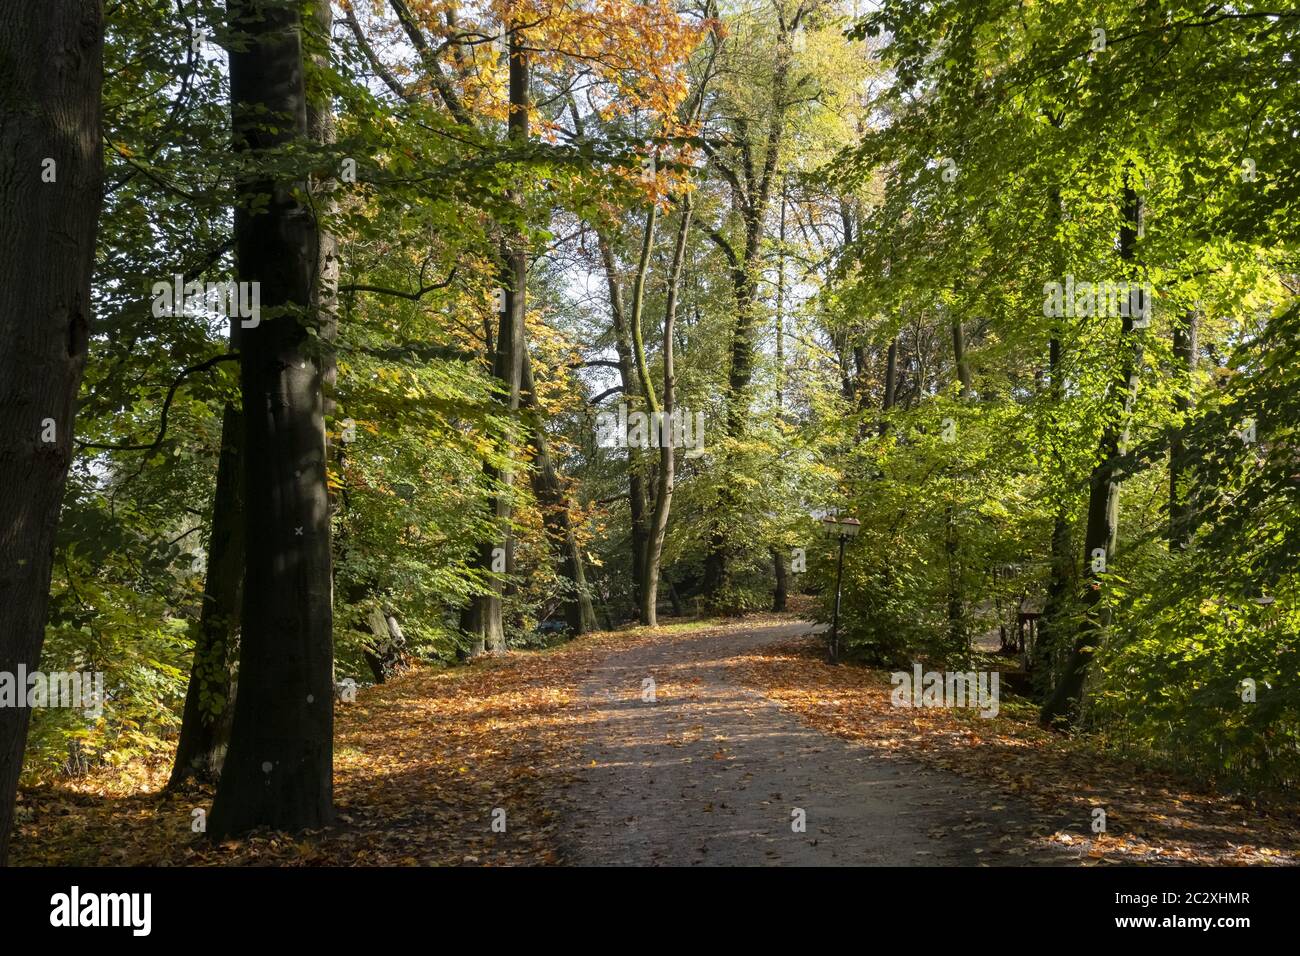 Way through autumn forest Stock Photo